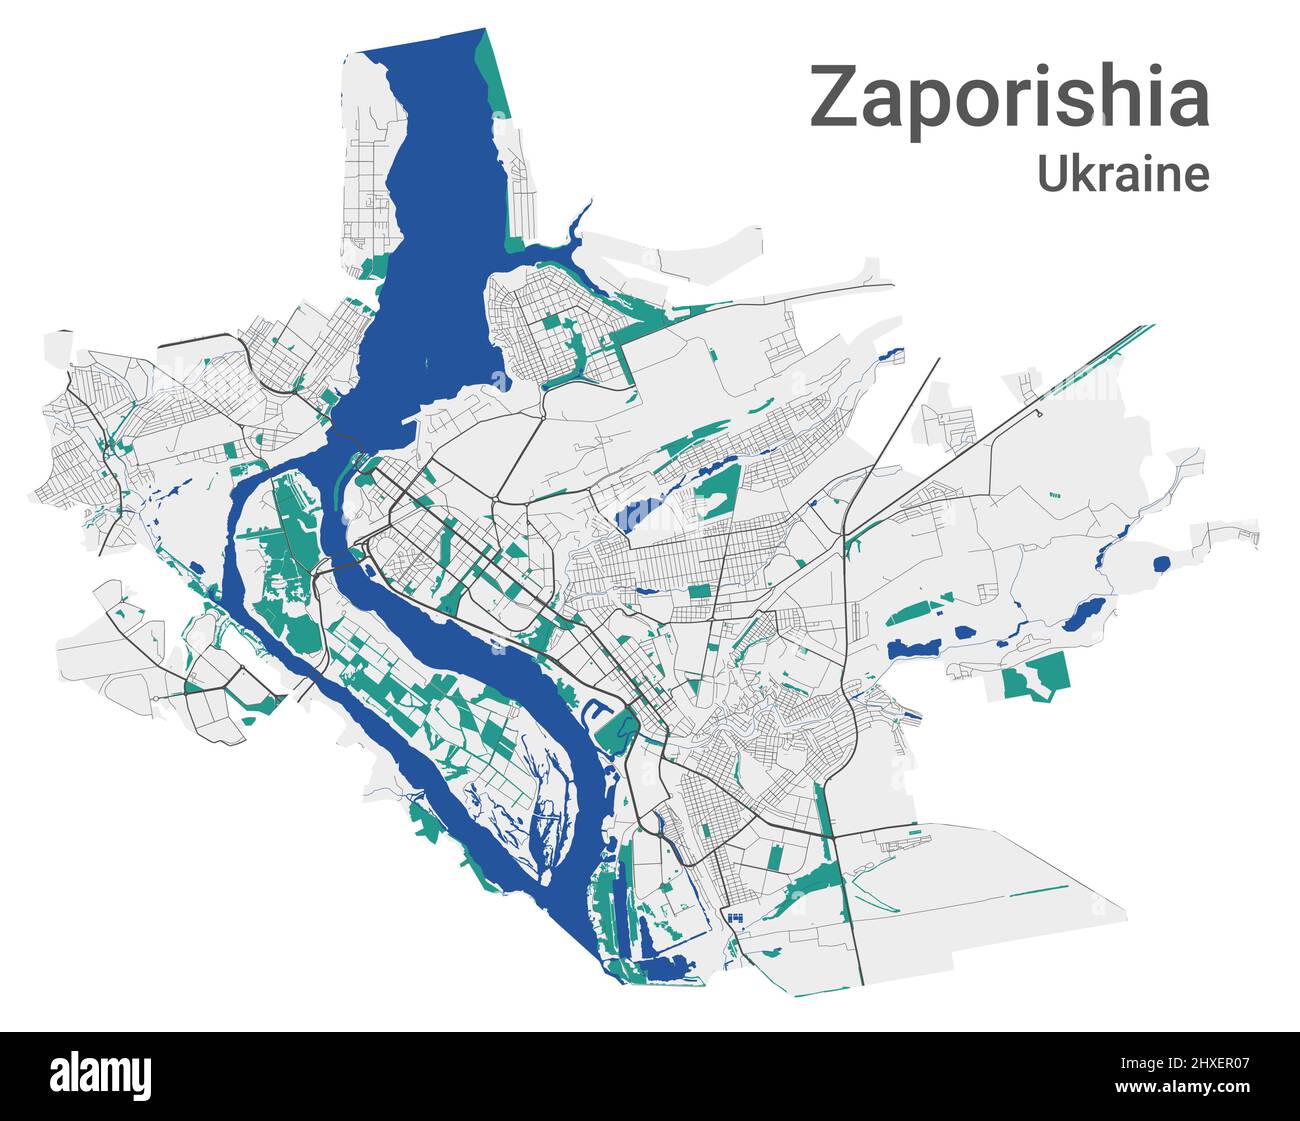 Mappa vettoriale Zaporizia. Mappa dettagliata dell'area amministrativa della città di Zaporizhia. Panorama urbano. Illustrazione vettoriale senza royalty. Mappa stradale con highwa Illustrazione Vettoriale